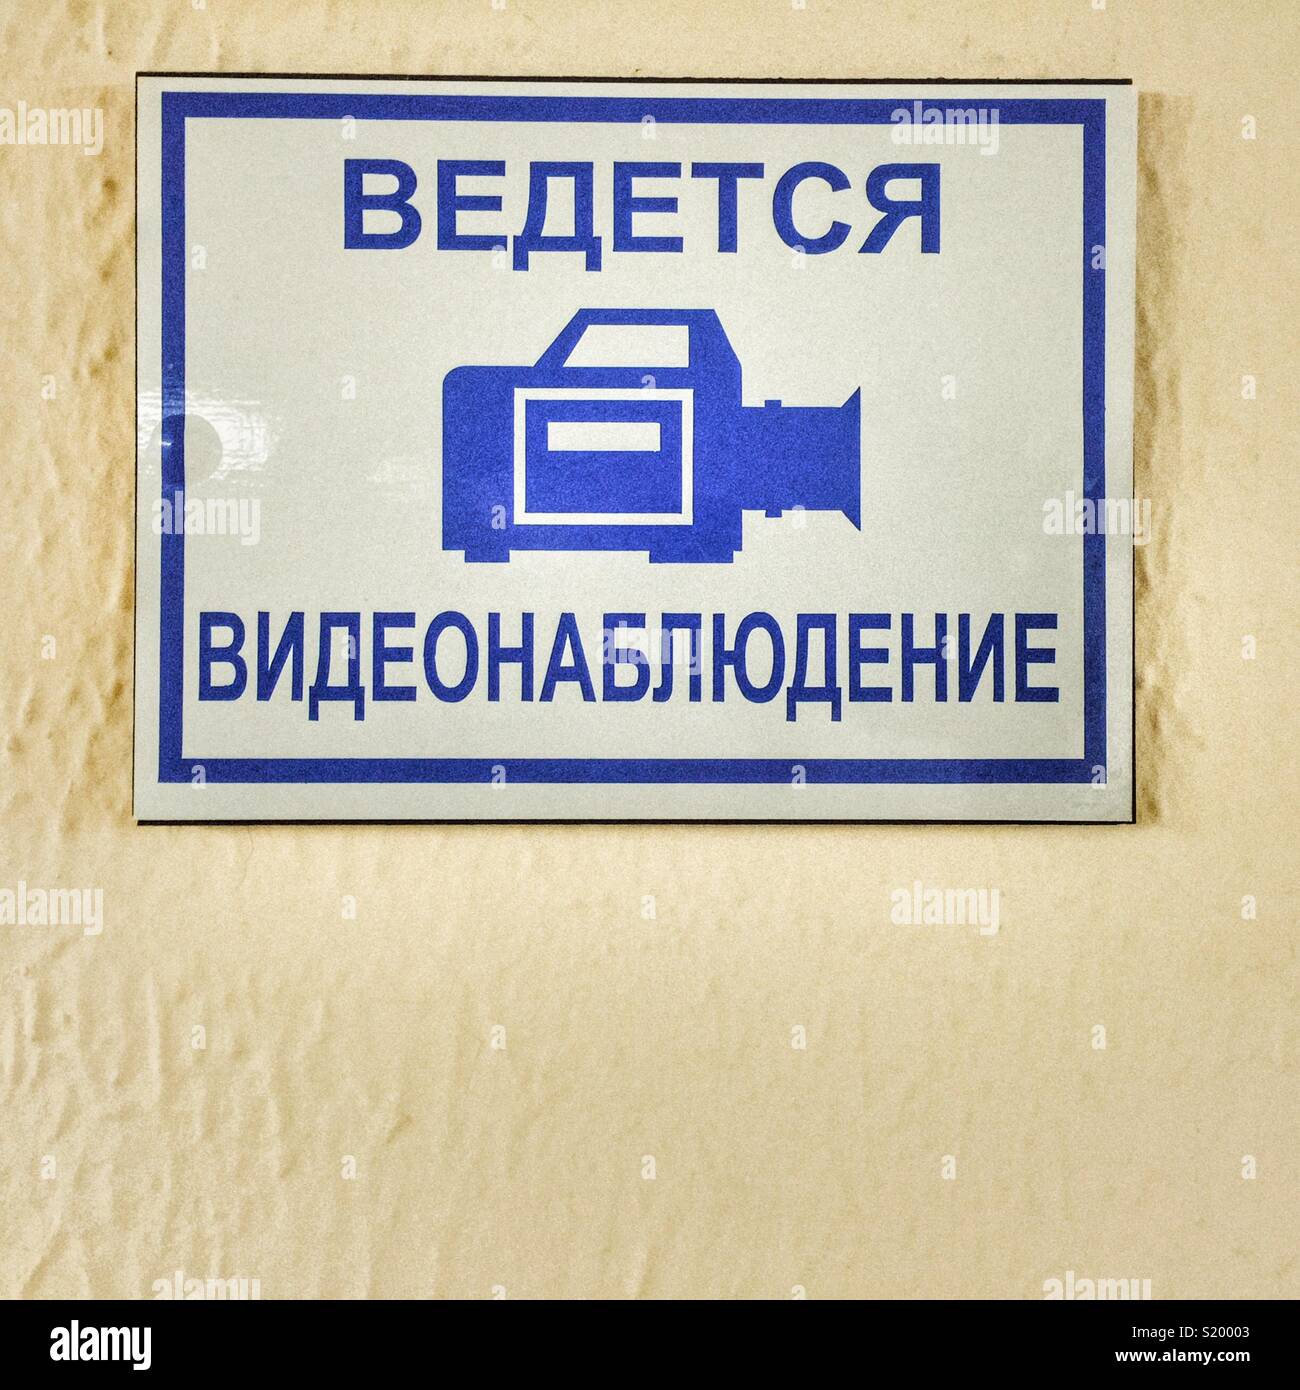 Signe de surveillance vidéo en langue russe sur le mur dans une clinique médicale Banque D'Images